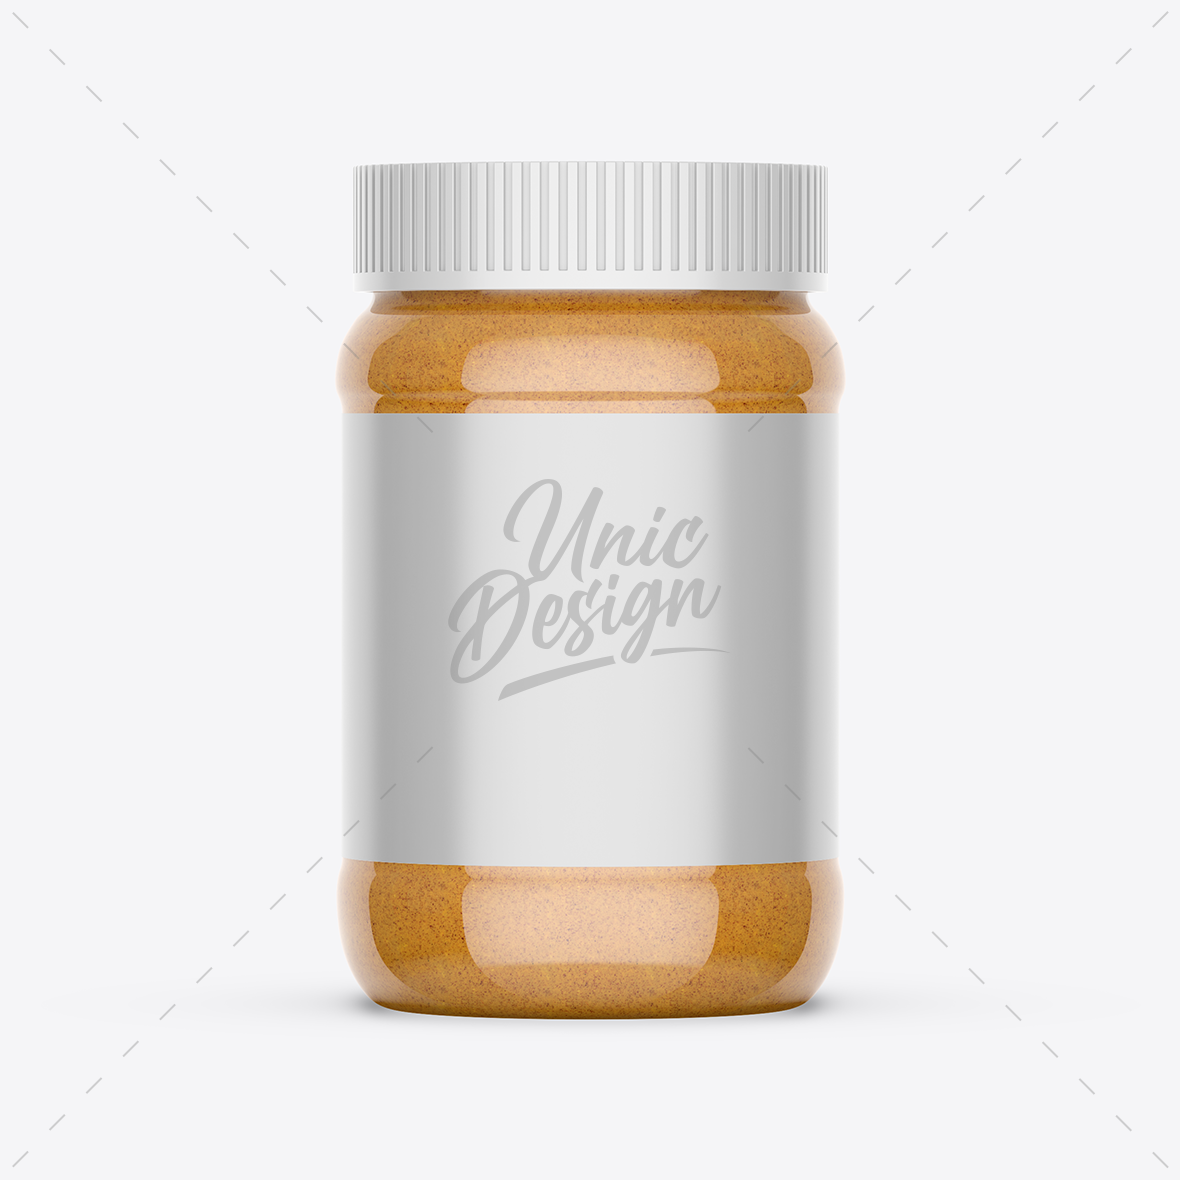 Peanut Butter Jar Mockup